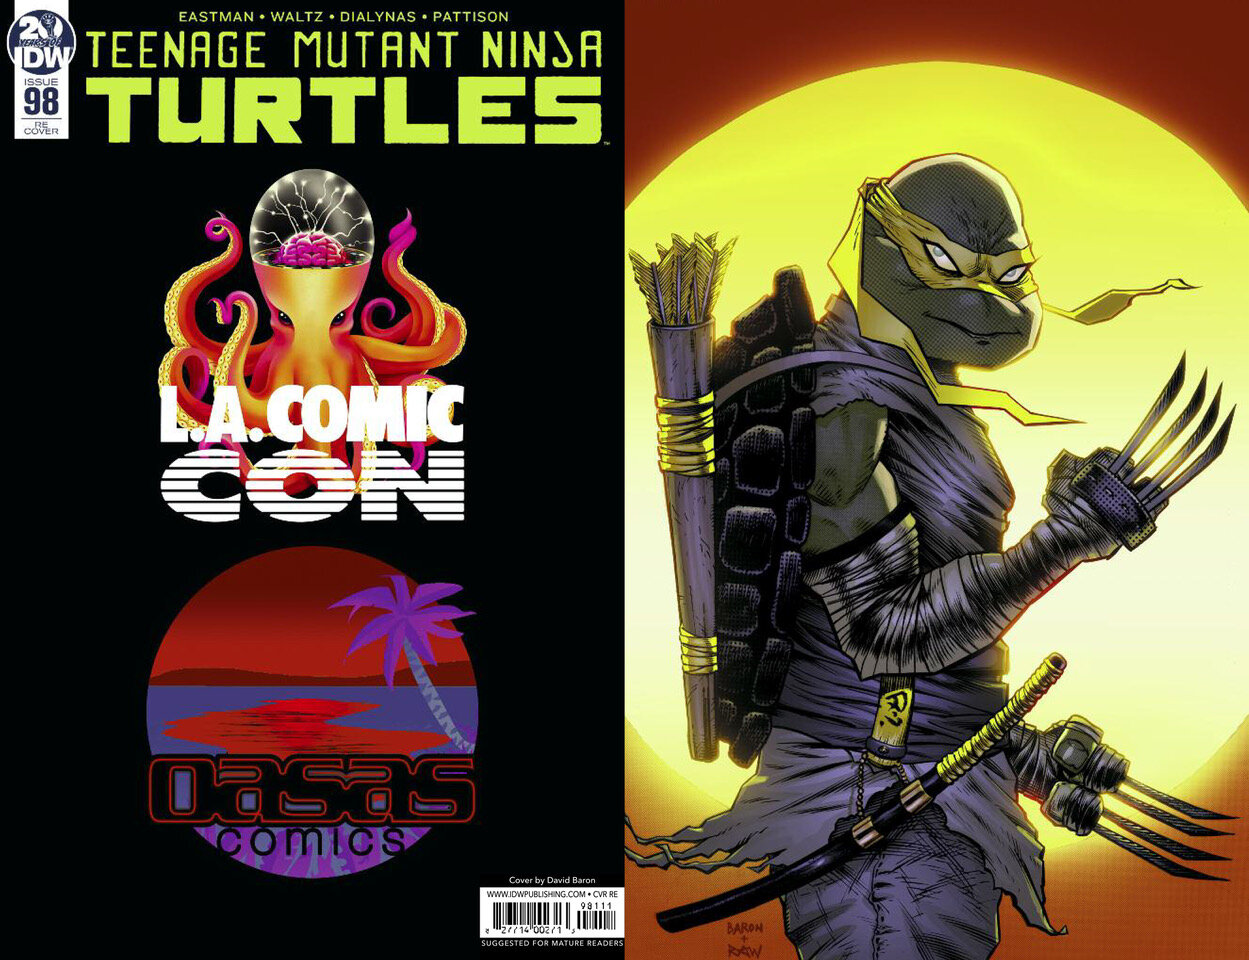 TMNT 98 OASAS Comics / LACC 2019 Exclsuive "Sun" Virgin Variant